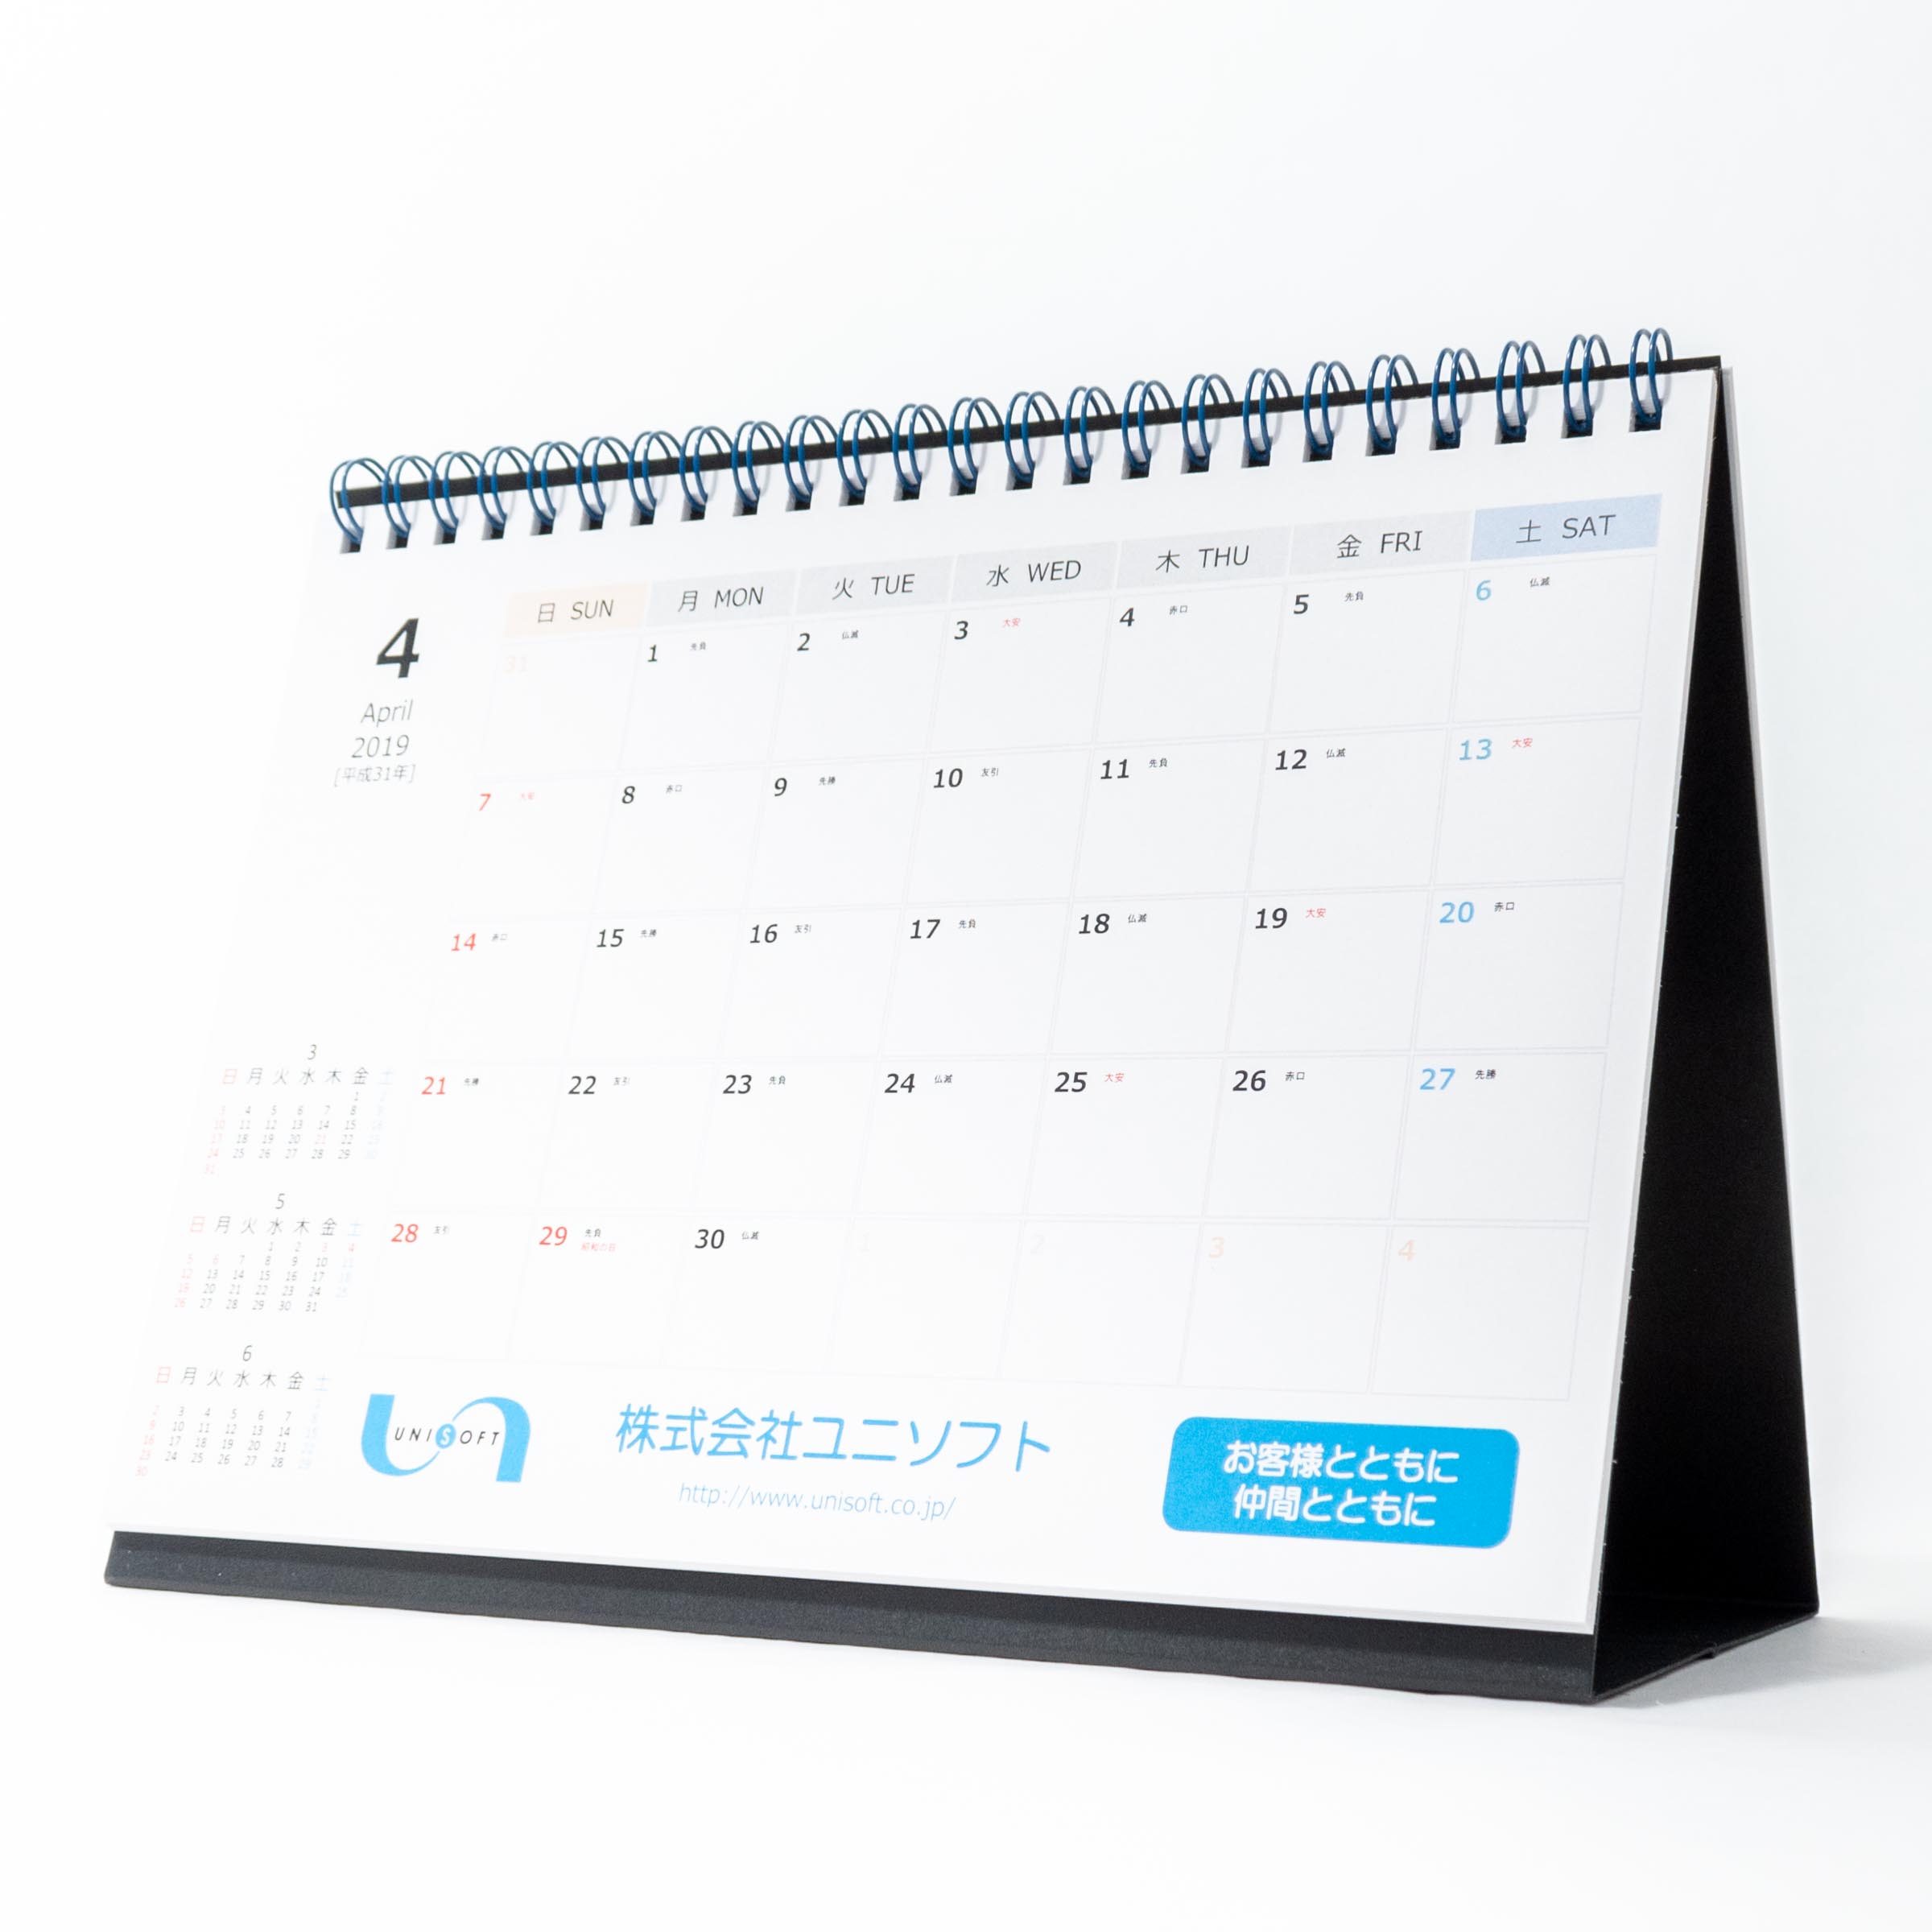 「株式会社ユニソフト 様」製作のオリジナルカレンダー ギャラリー写真2